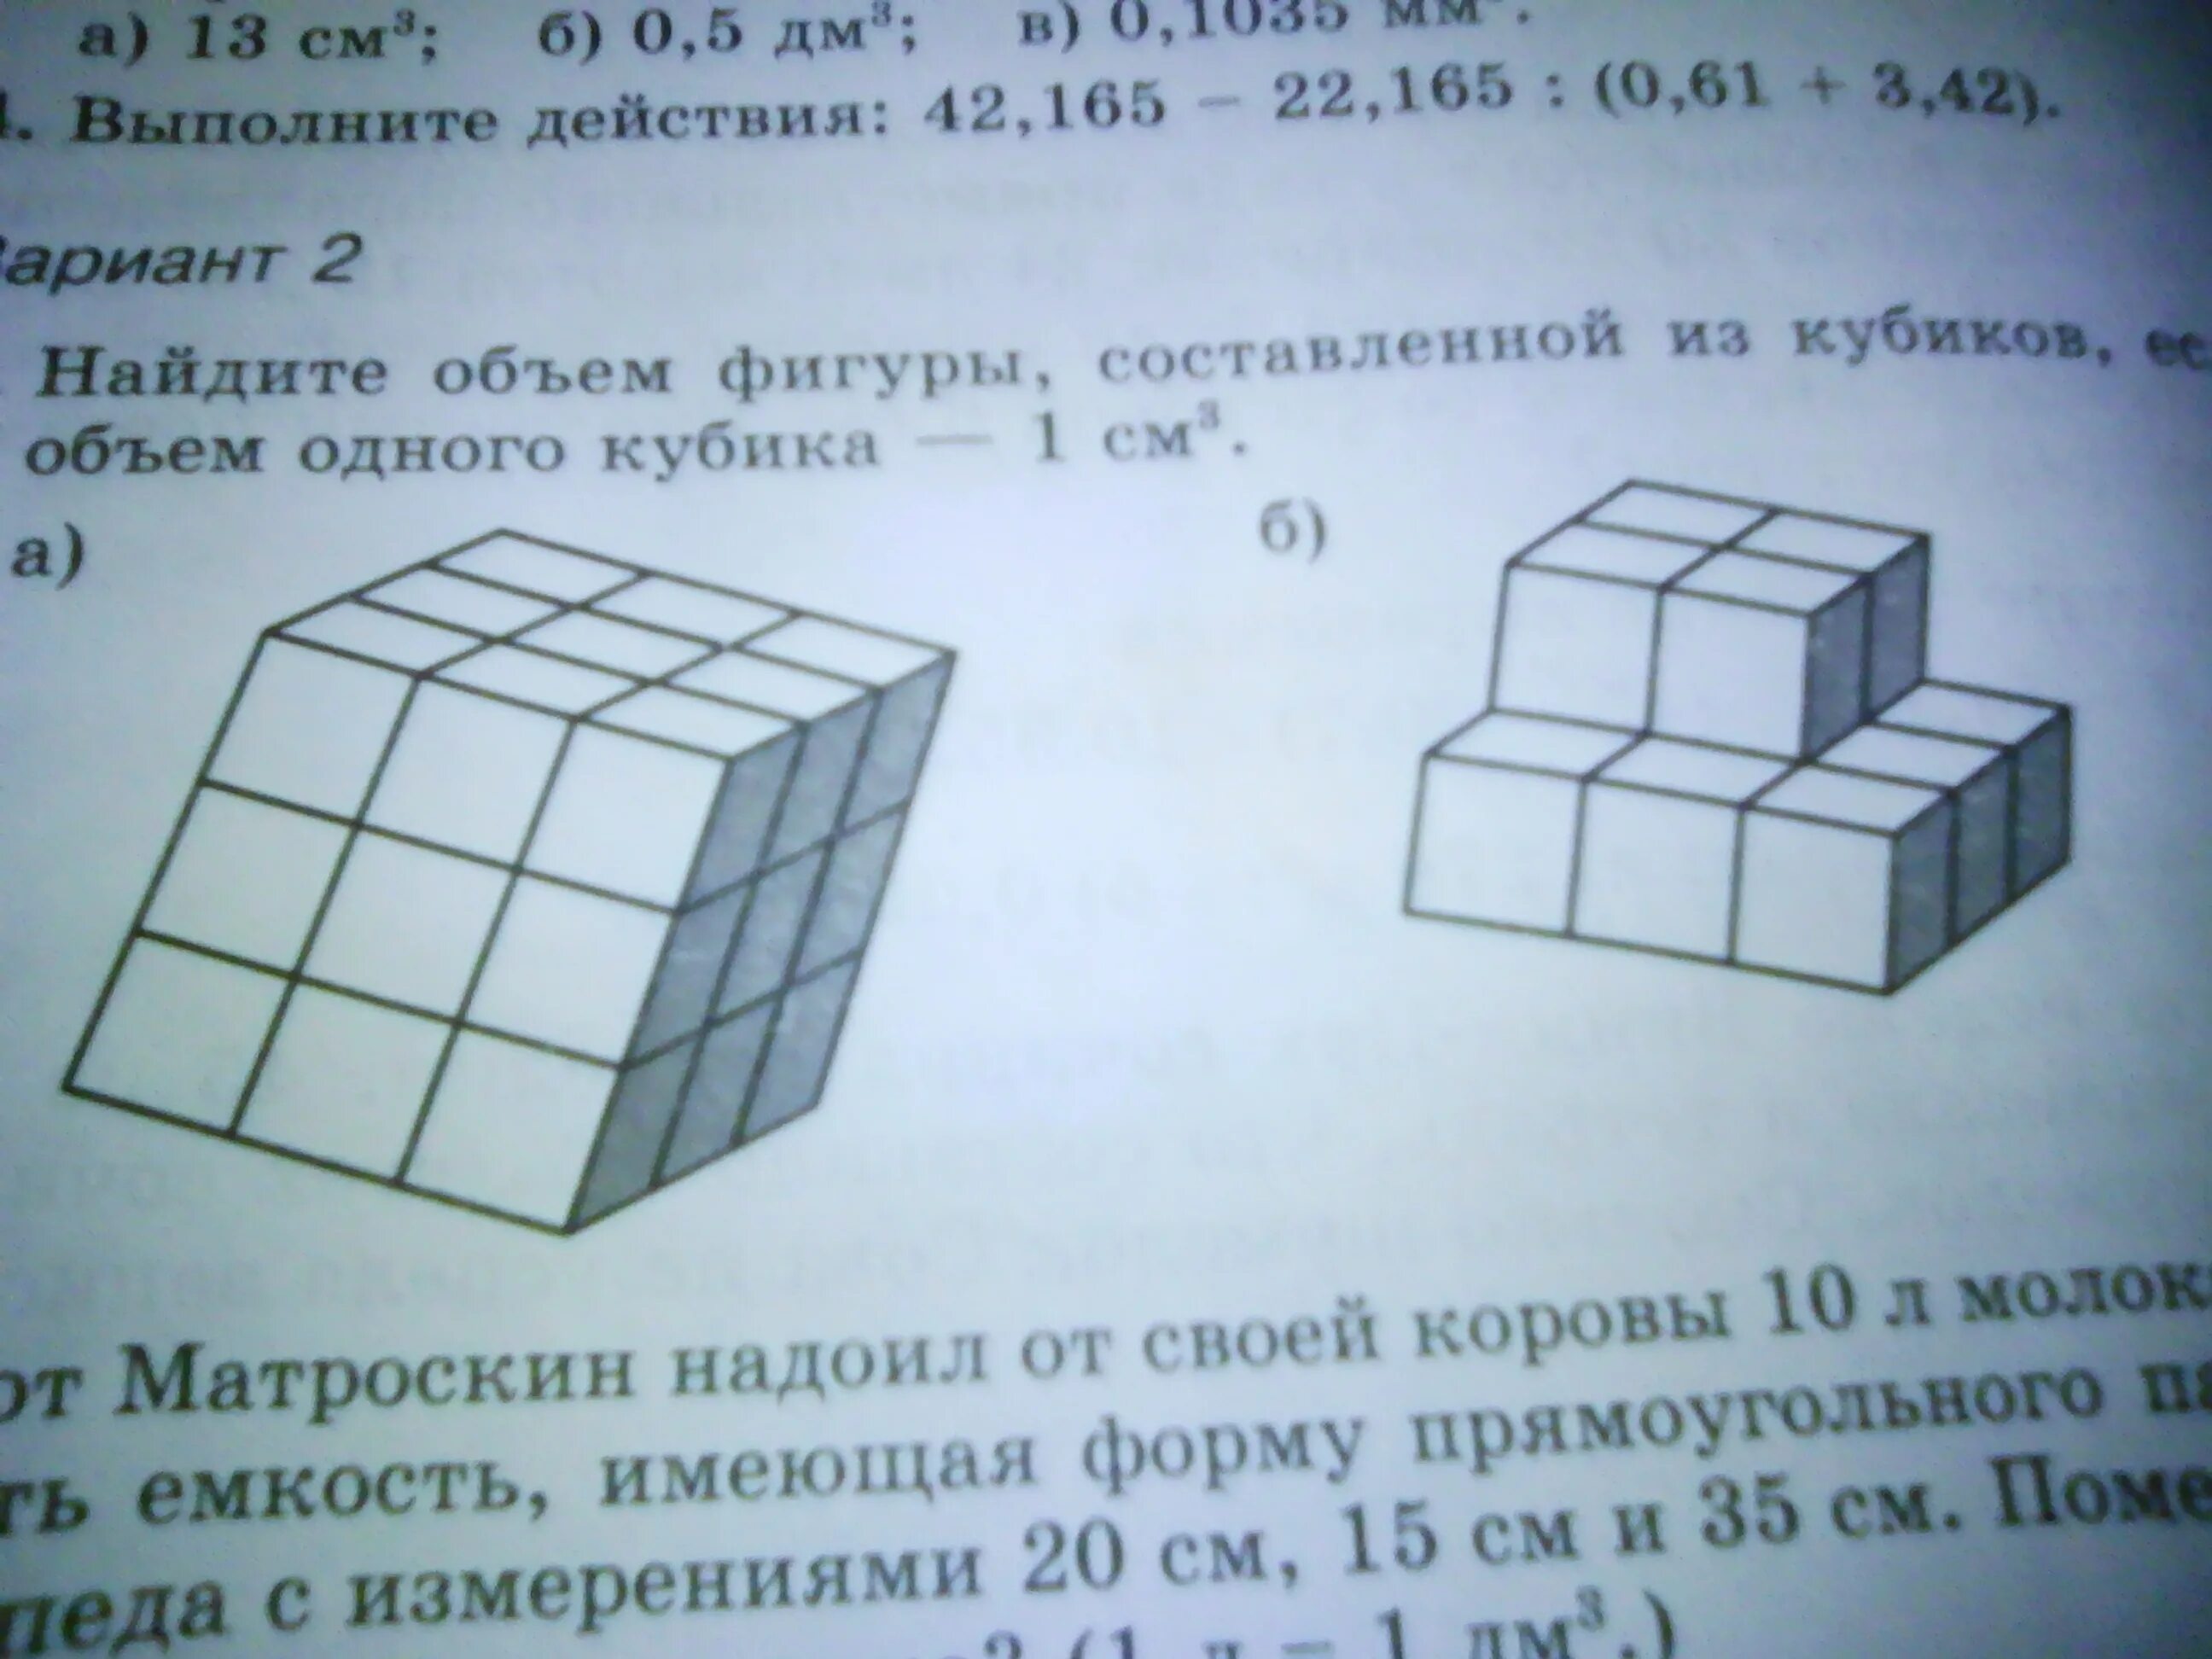 Найди сколько кубиков. Найти объем фигуры. Объем фигуры в кубиках. Объем фигур из кубиков. Найти объем фигуры составленной из кубиков.